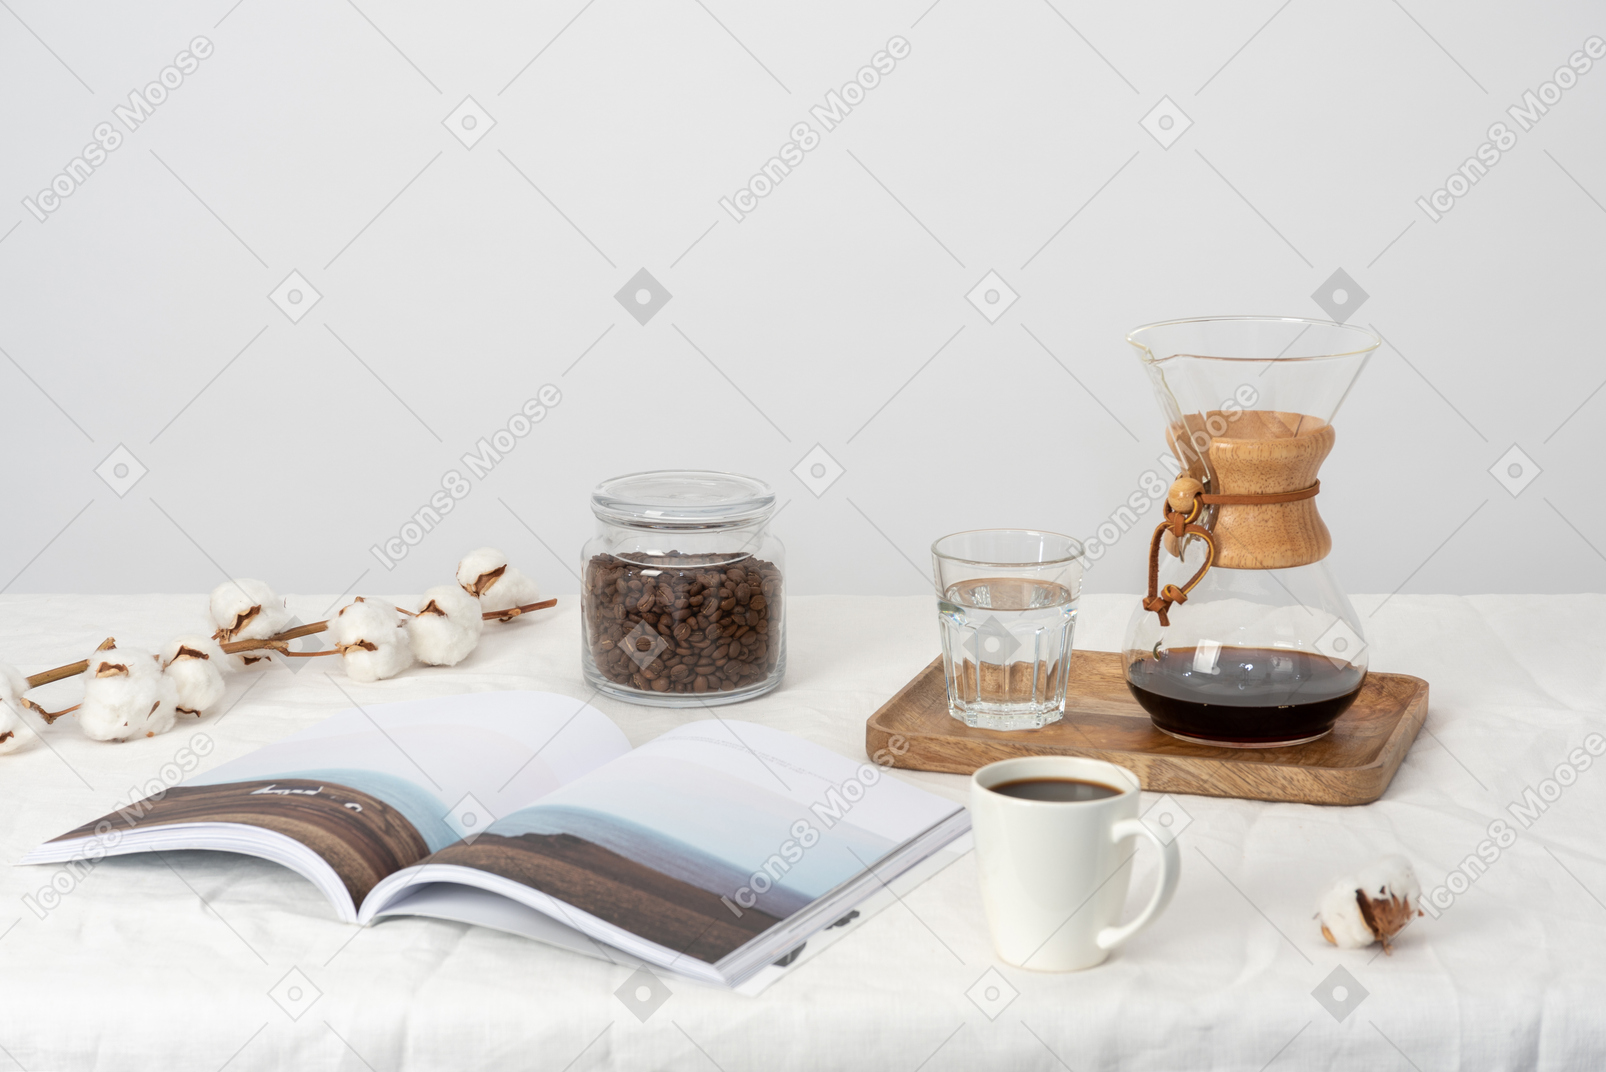 Chemex und glas wasser auf dem tablett, großes glas wasser, glas mit kaffeebohnen, magazibe und baumwollzweig